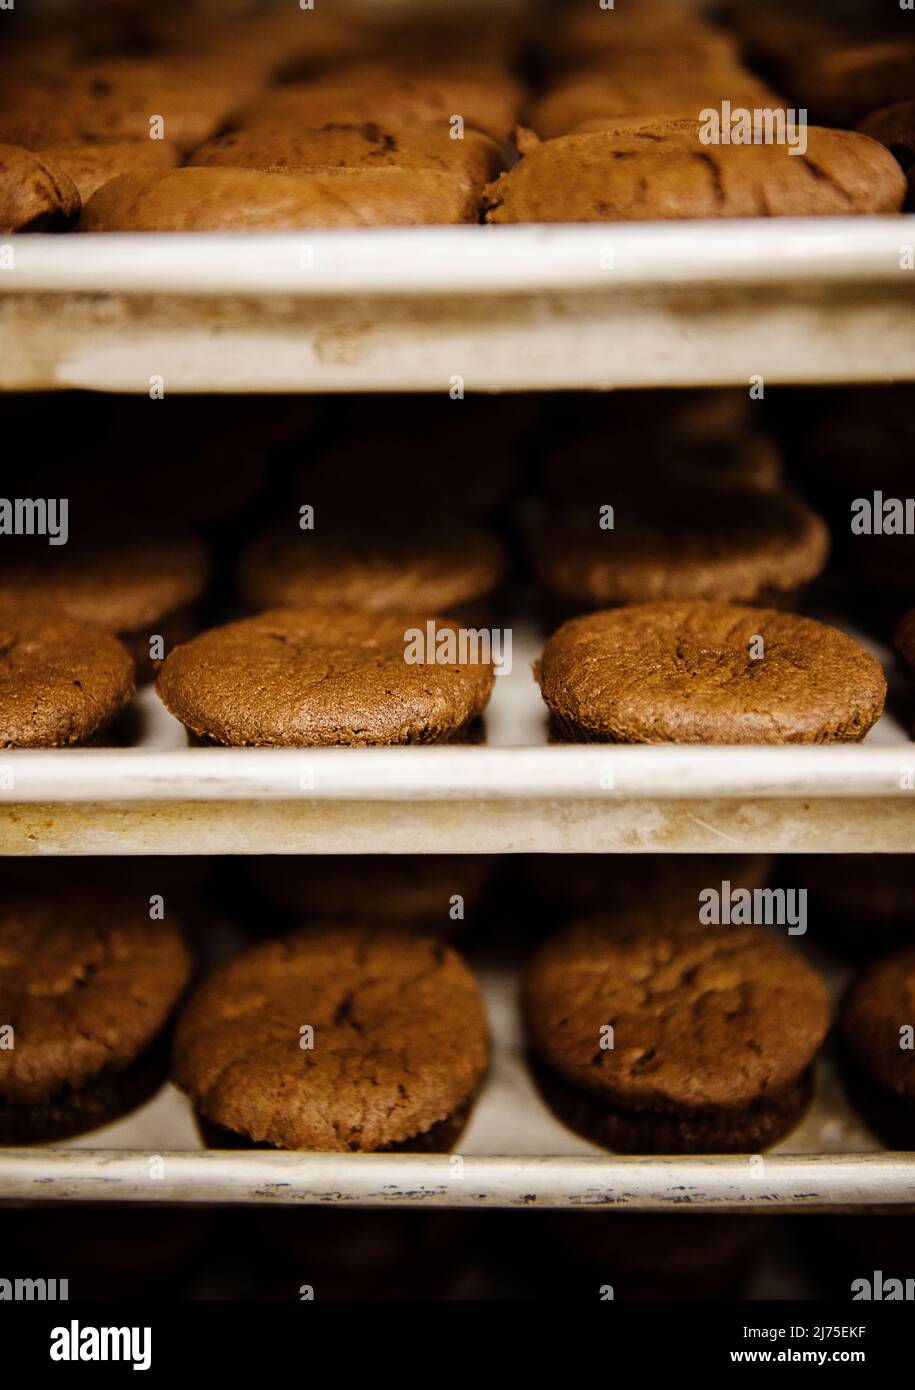 pâtisseries au chocolat sur des étagères dans une boulangerie Banque D'Images